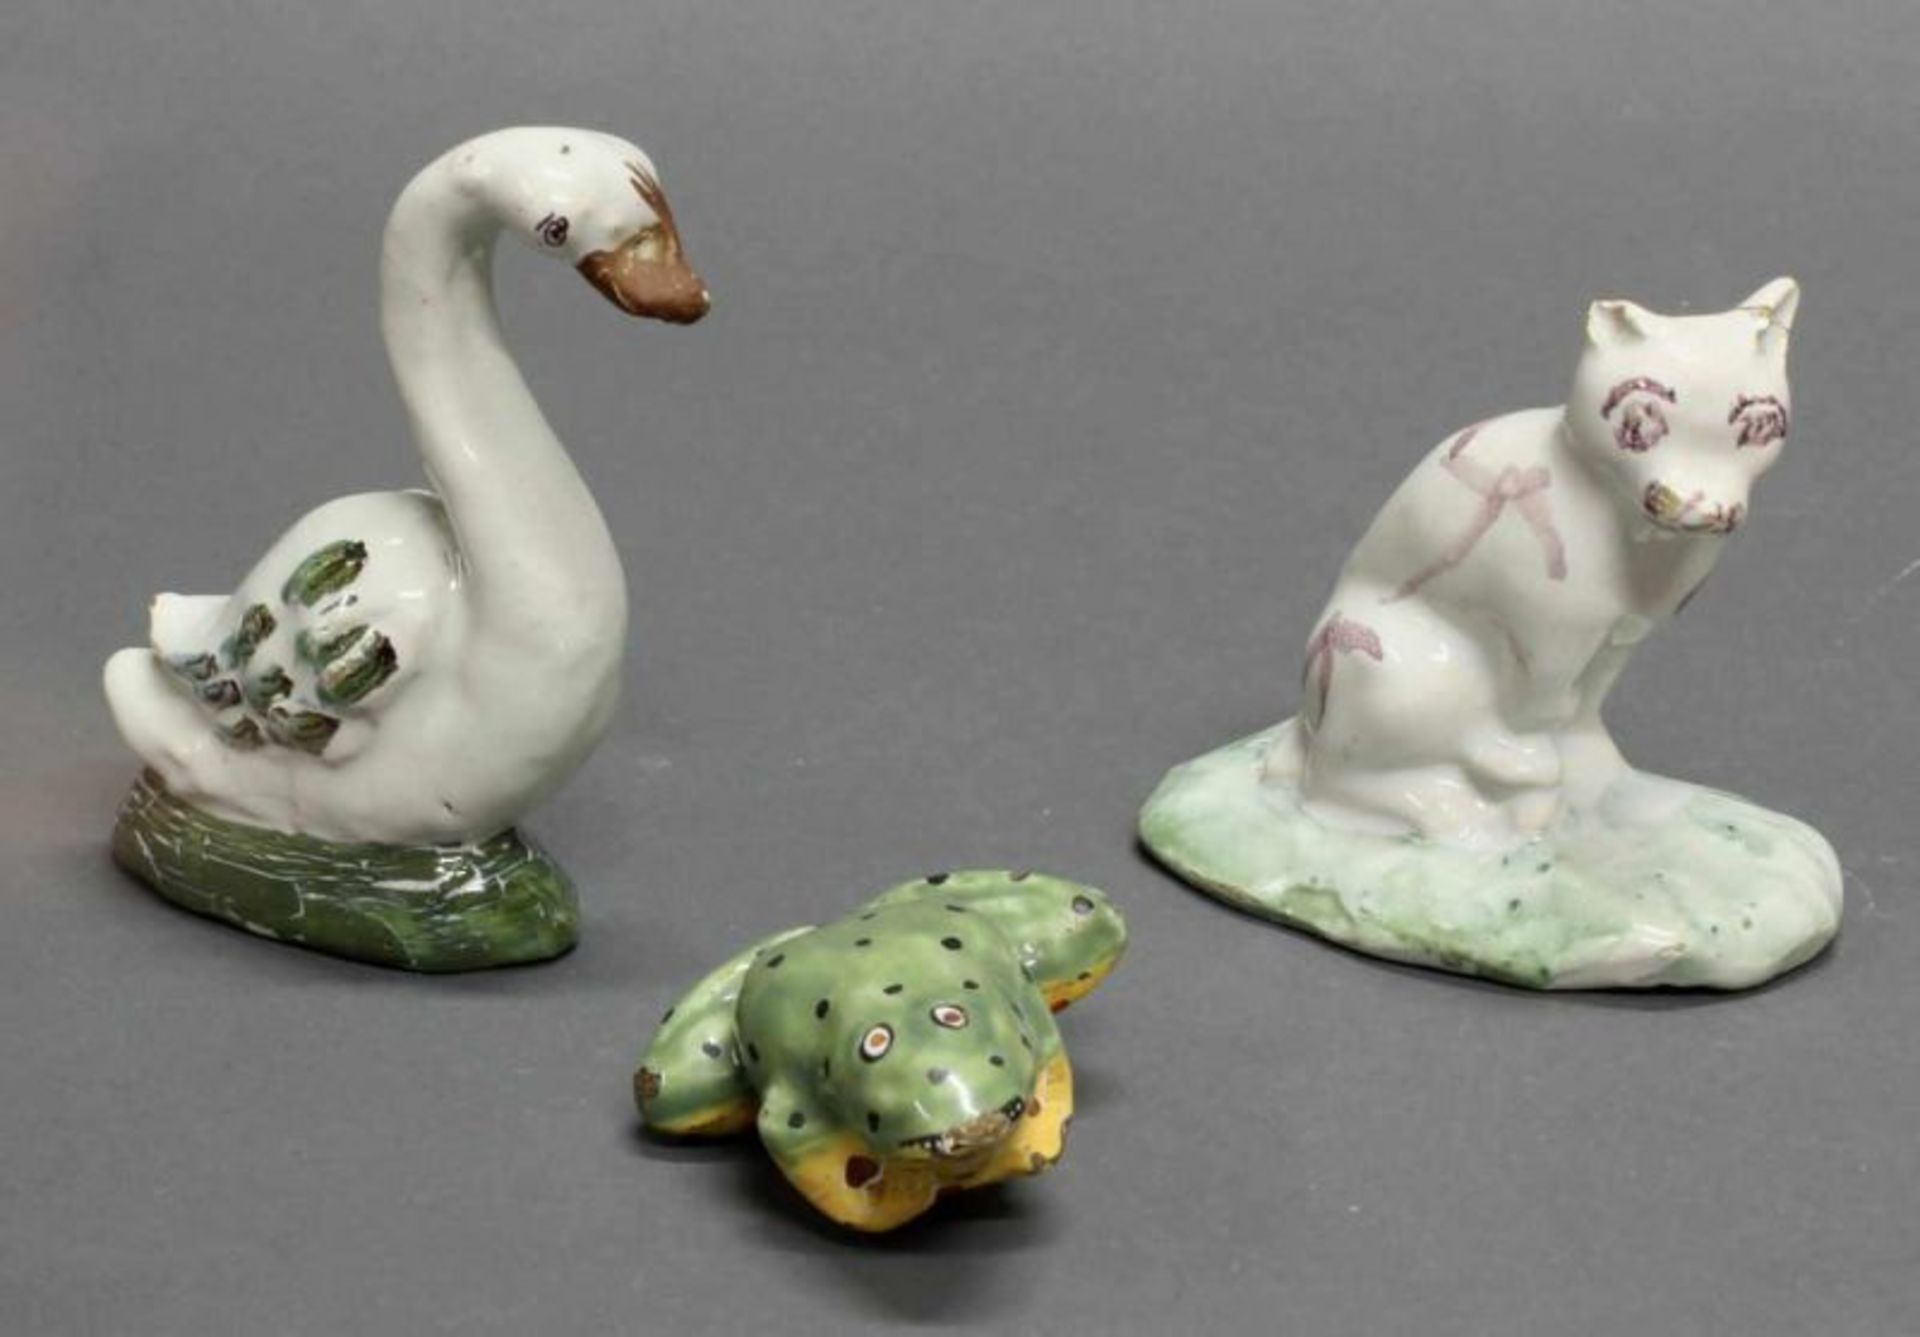 3 Fayencefiguren, "Schwan", "Frosch", "Katze", wohl Delft bzw. Brüssel (Katze), 18 Jh., ungemarkt,